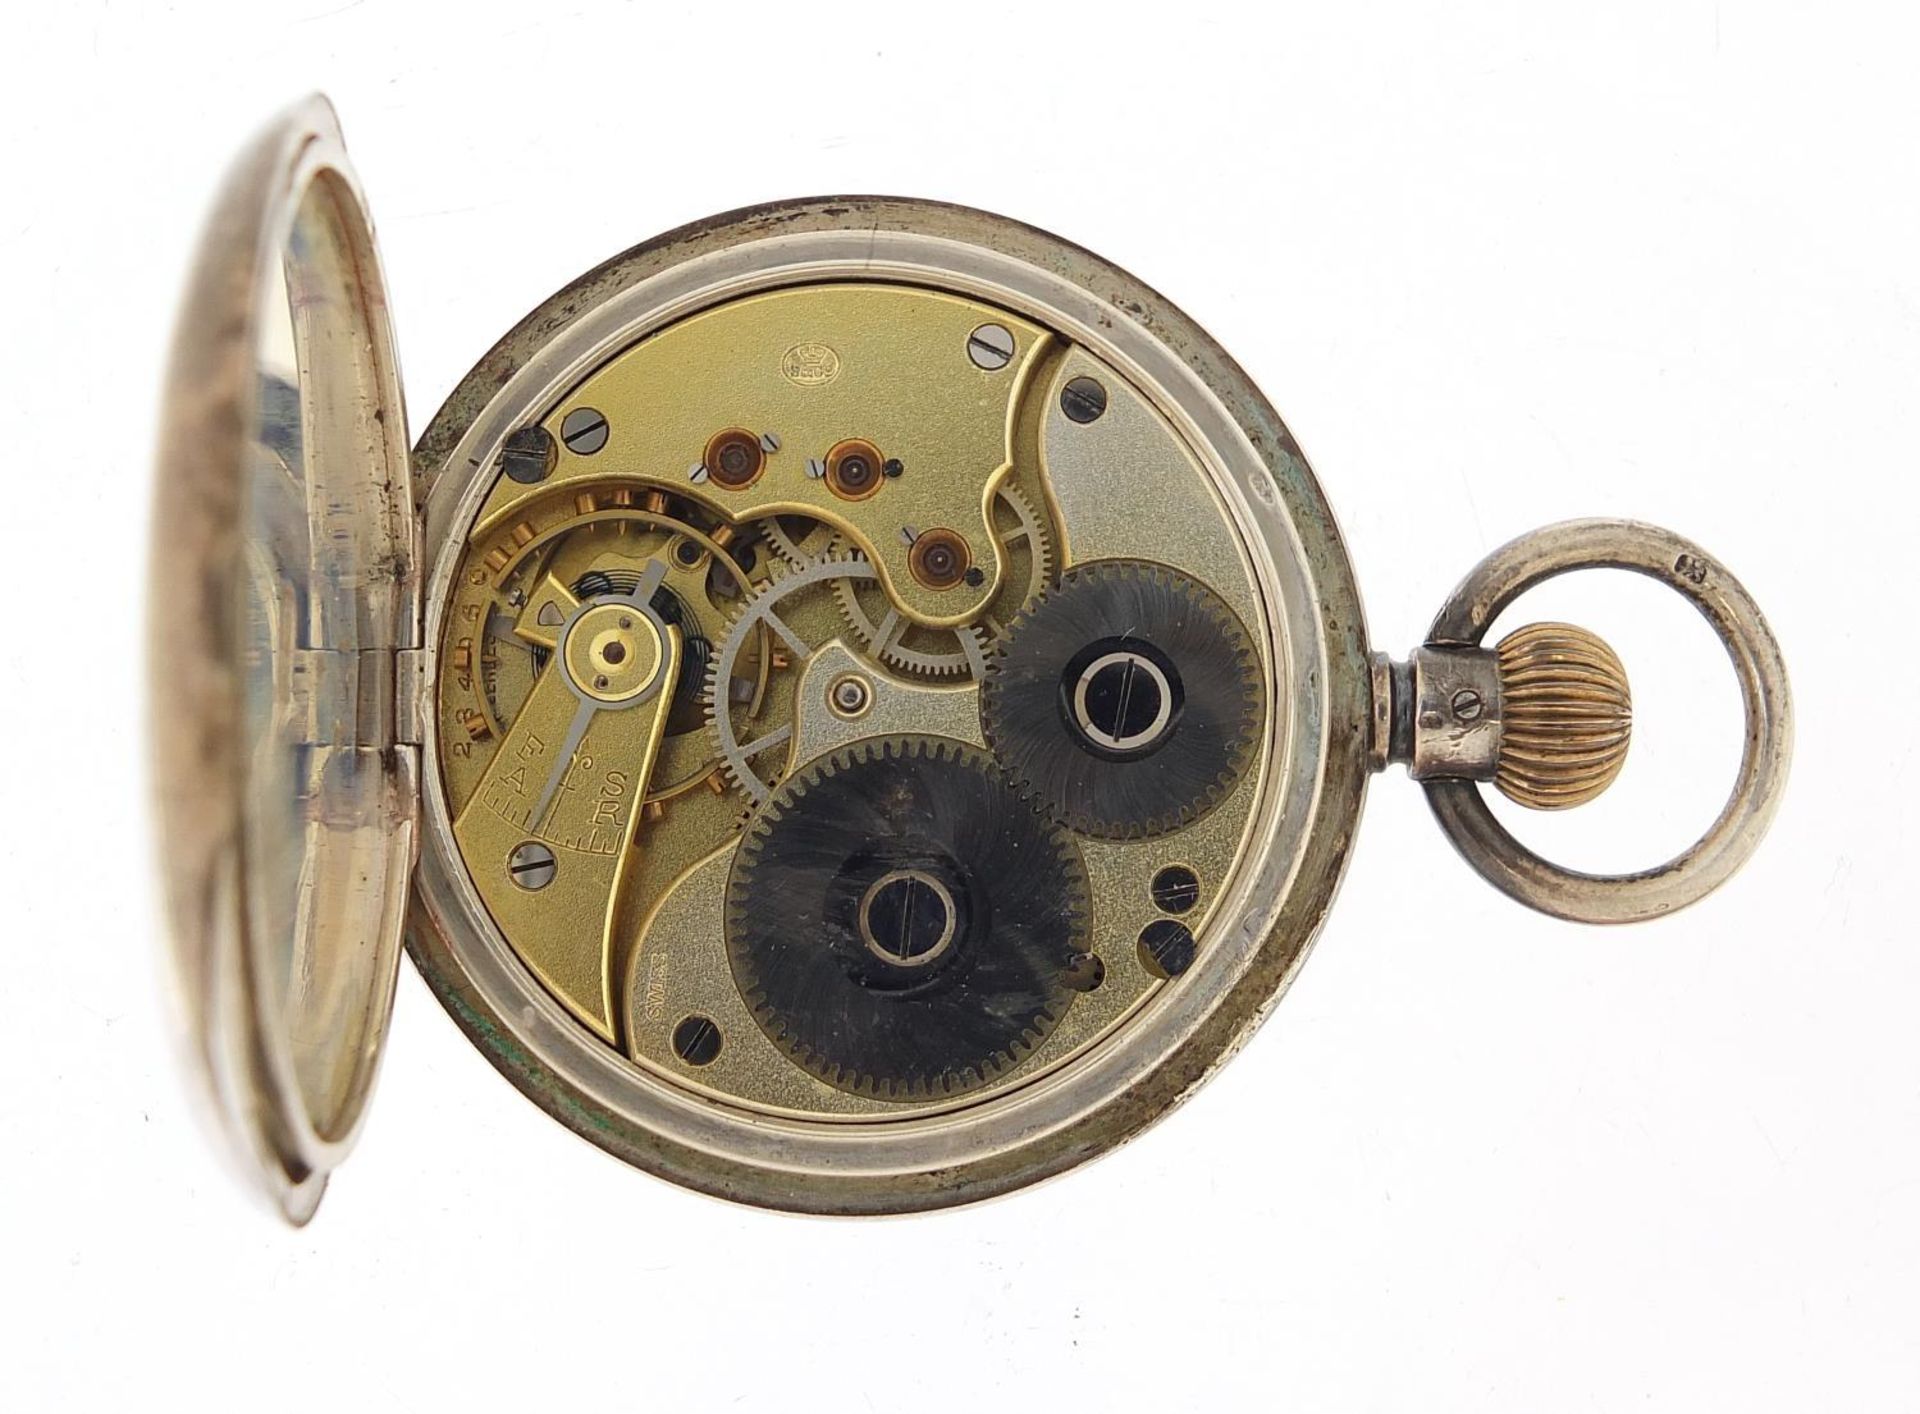 Gentlemen's silver half hunter pocket watch with enamel dial, 49mm in diameter - Image 3 of 5